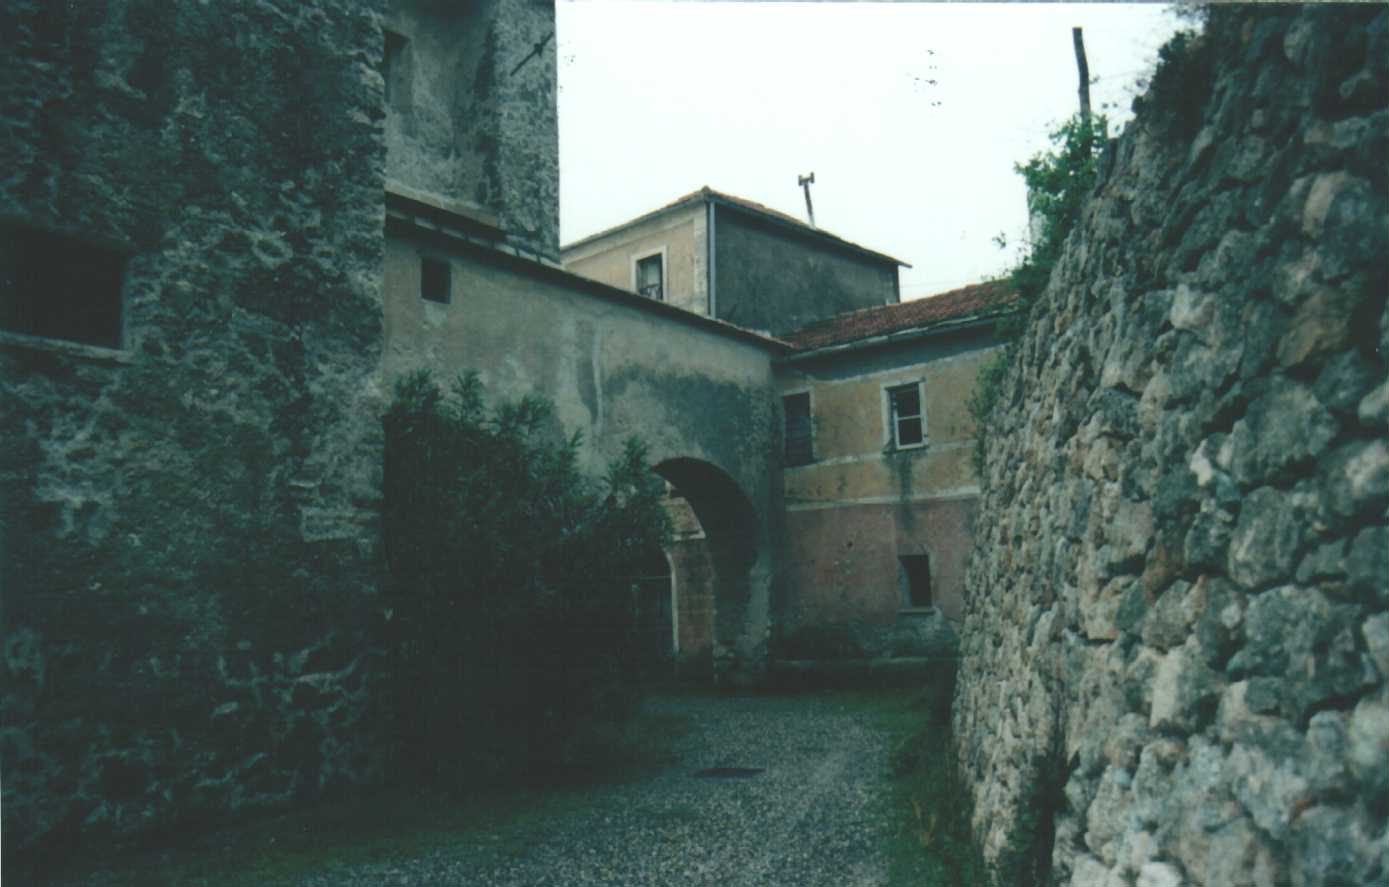 Canonica di S. Cipriano (ex) (casa, parrocchiale) - Finale Ligure (SV)  (XIX, Seconda metà)